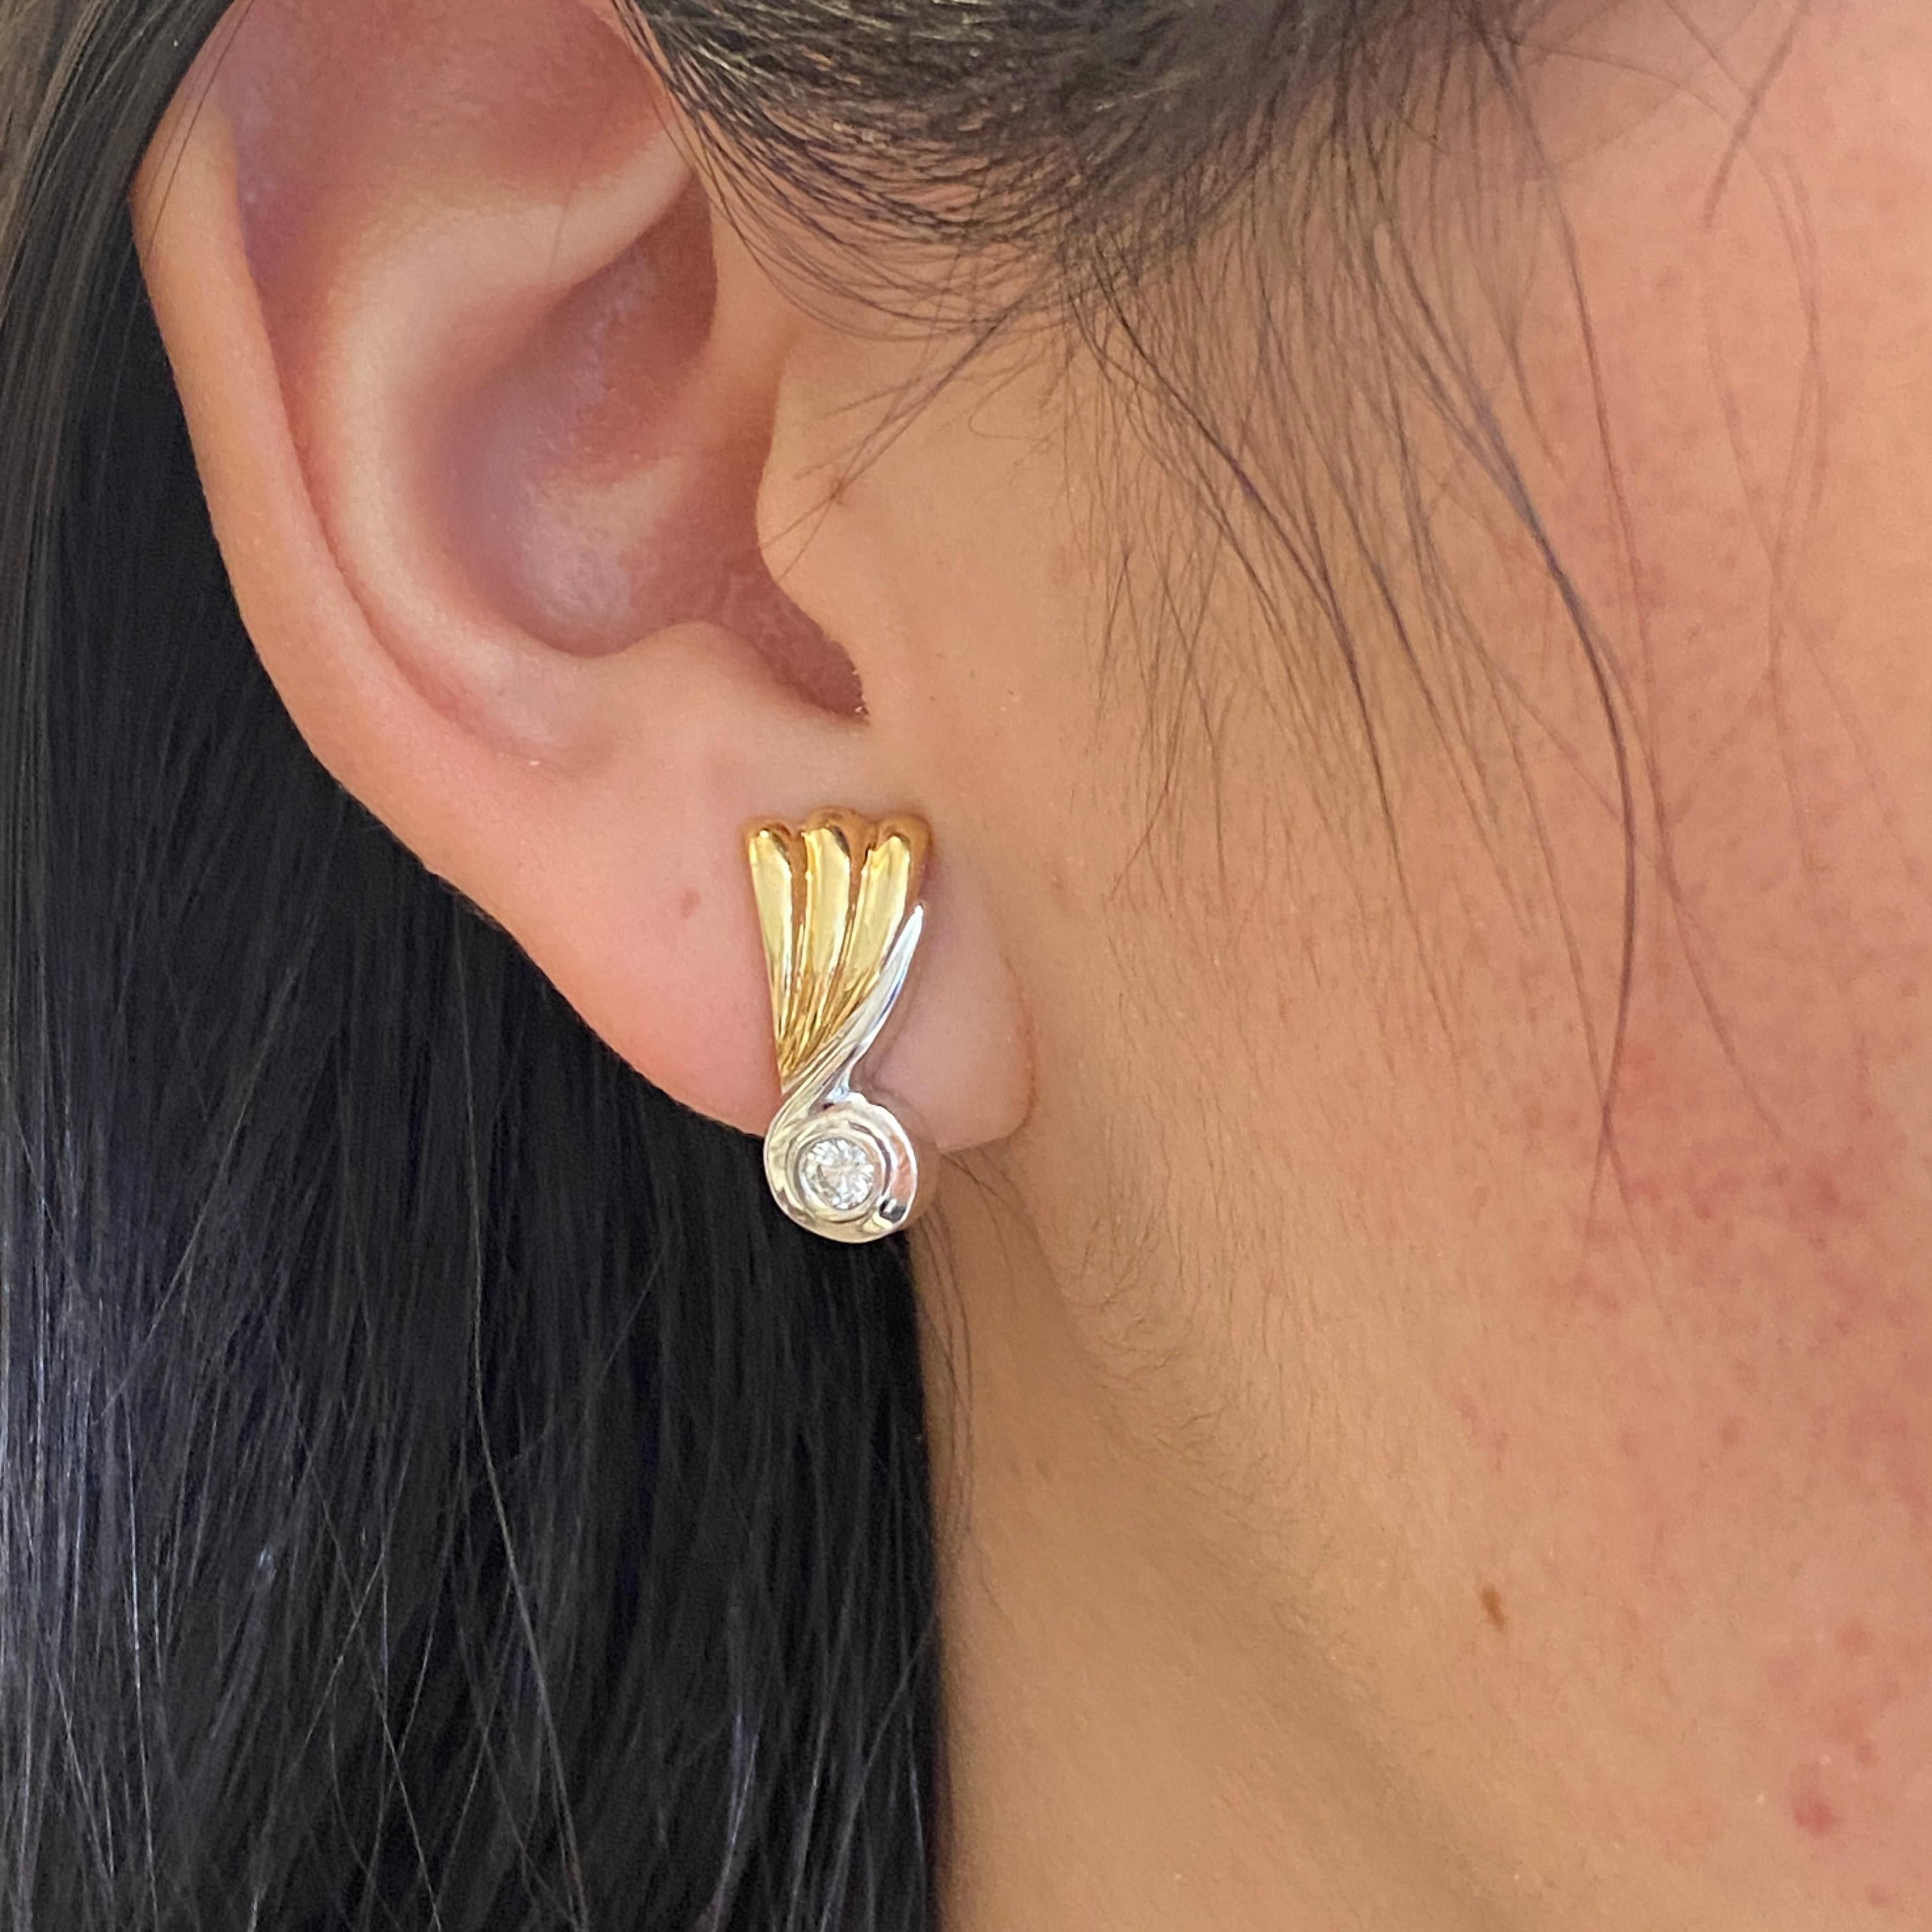 Bringen Sie einen Hauch von Retro-Flair in Ihren Tag mit diesen fabelhaften zweifarbigen Diamantohrringen! Ein dreifacher Schwung fächerförmiger Rippen aus Gelbgold ziert den oberen Teil dieser schönen Ohrringe und schmiegt sich an eine ausladende